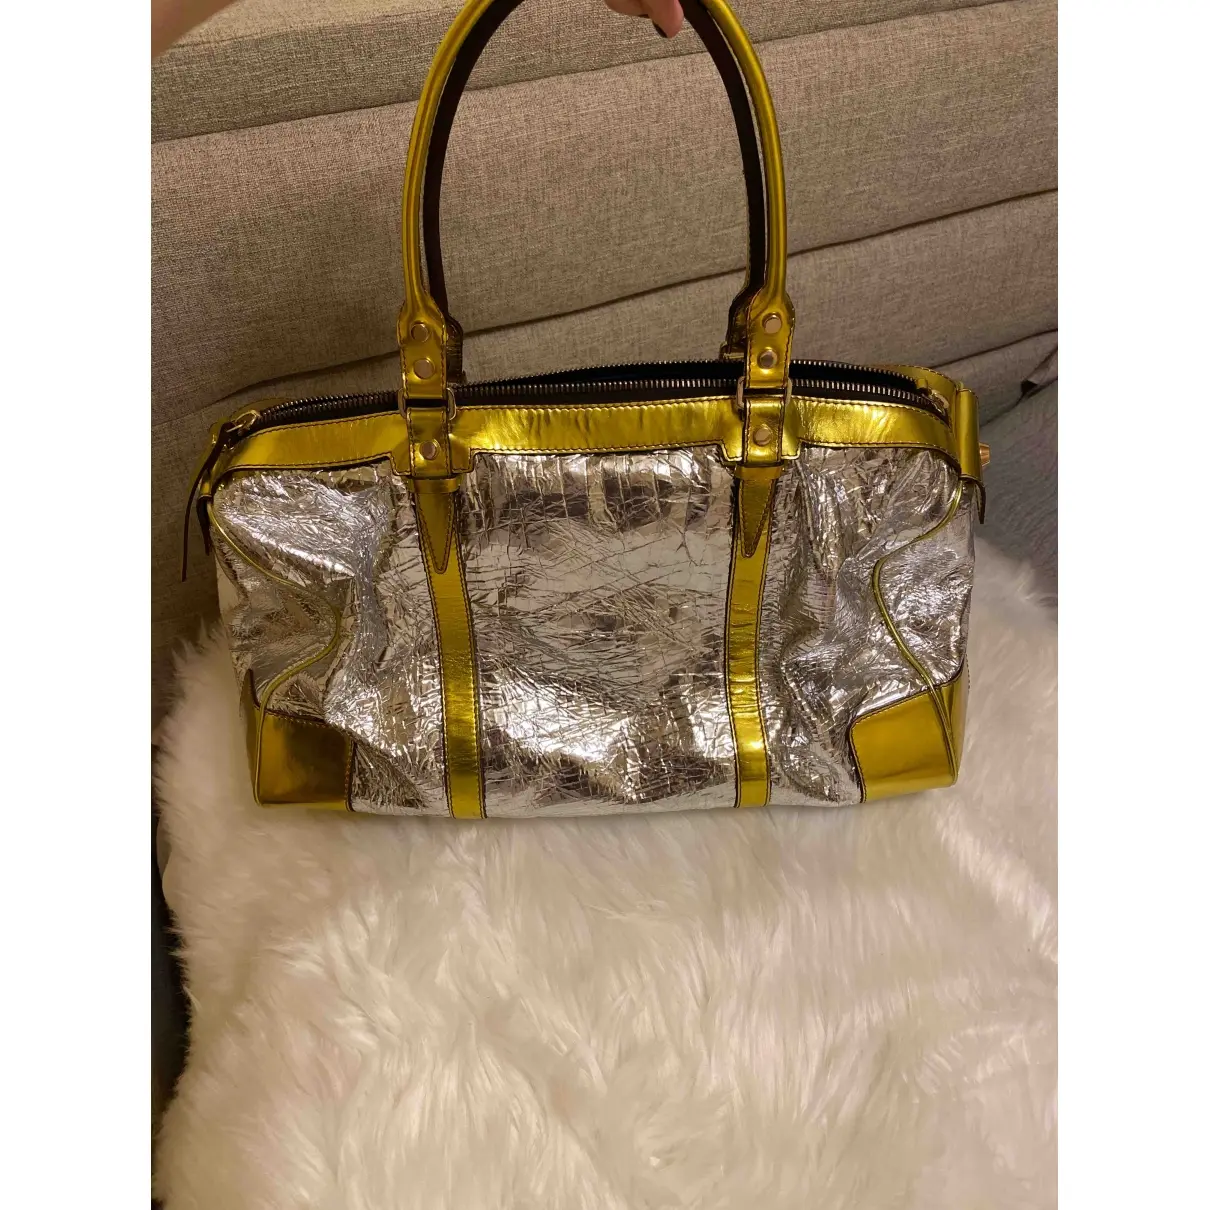 Lanvin Leather handbag for sale